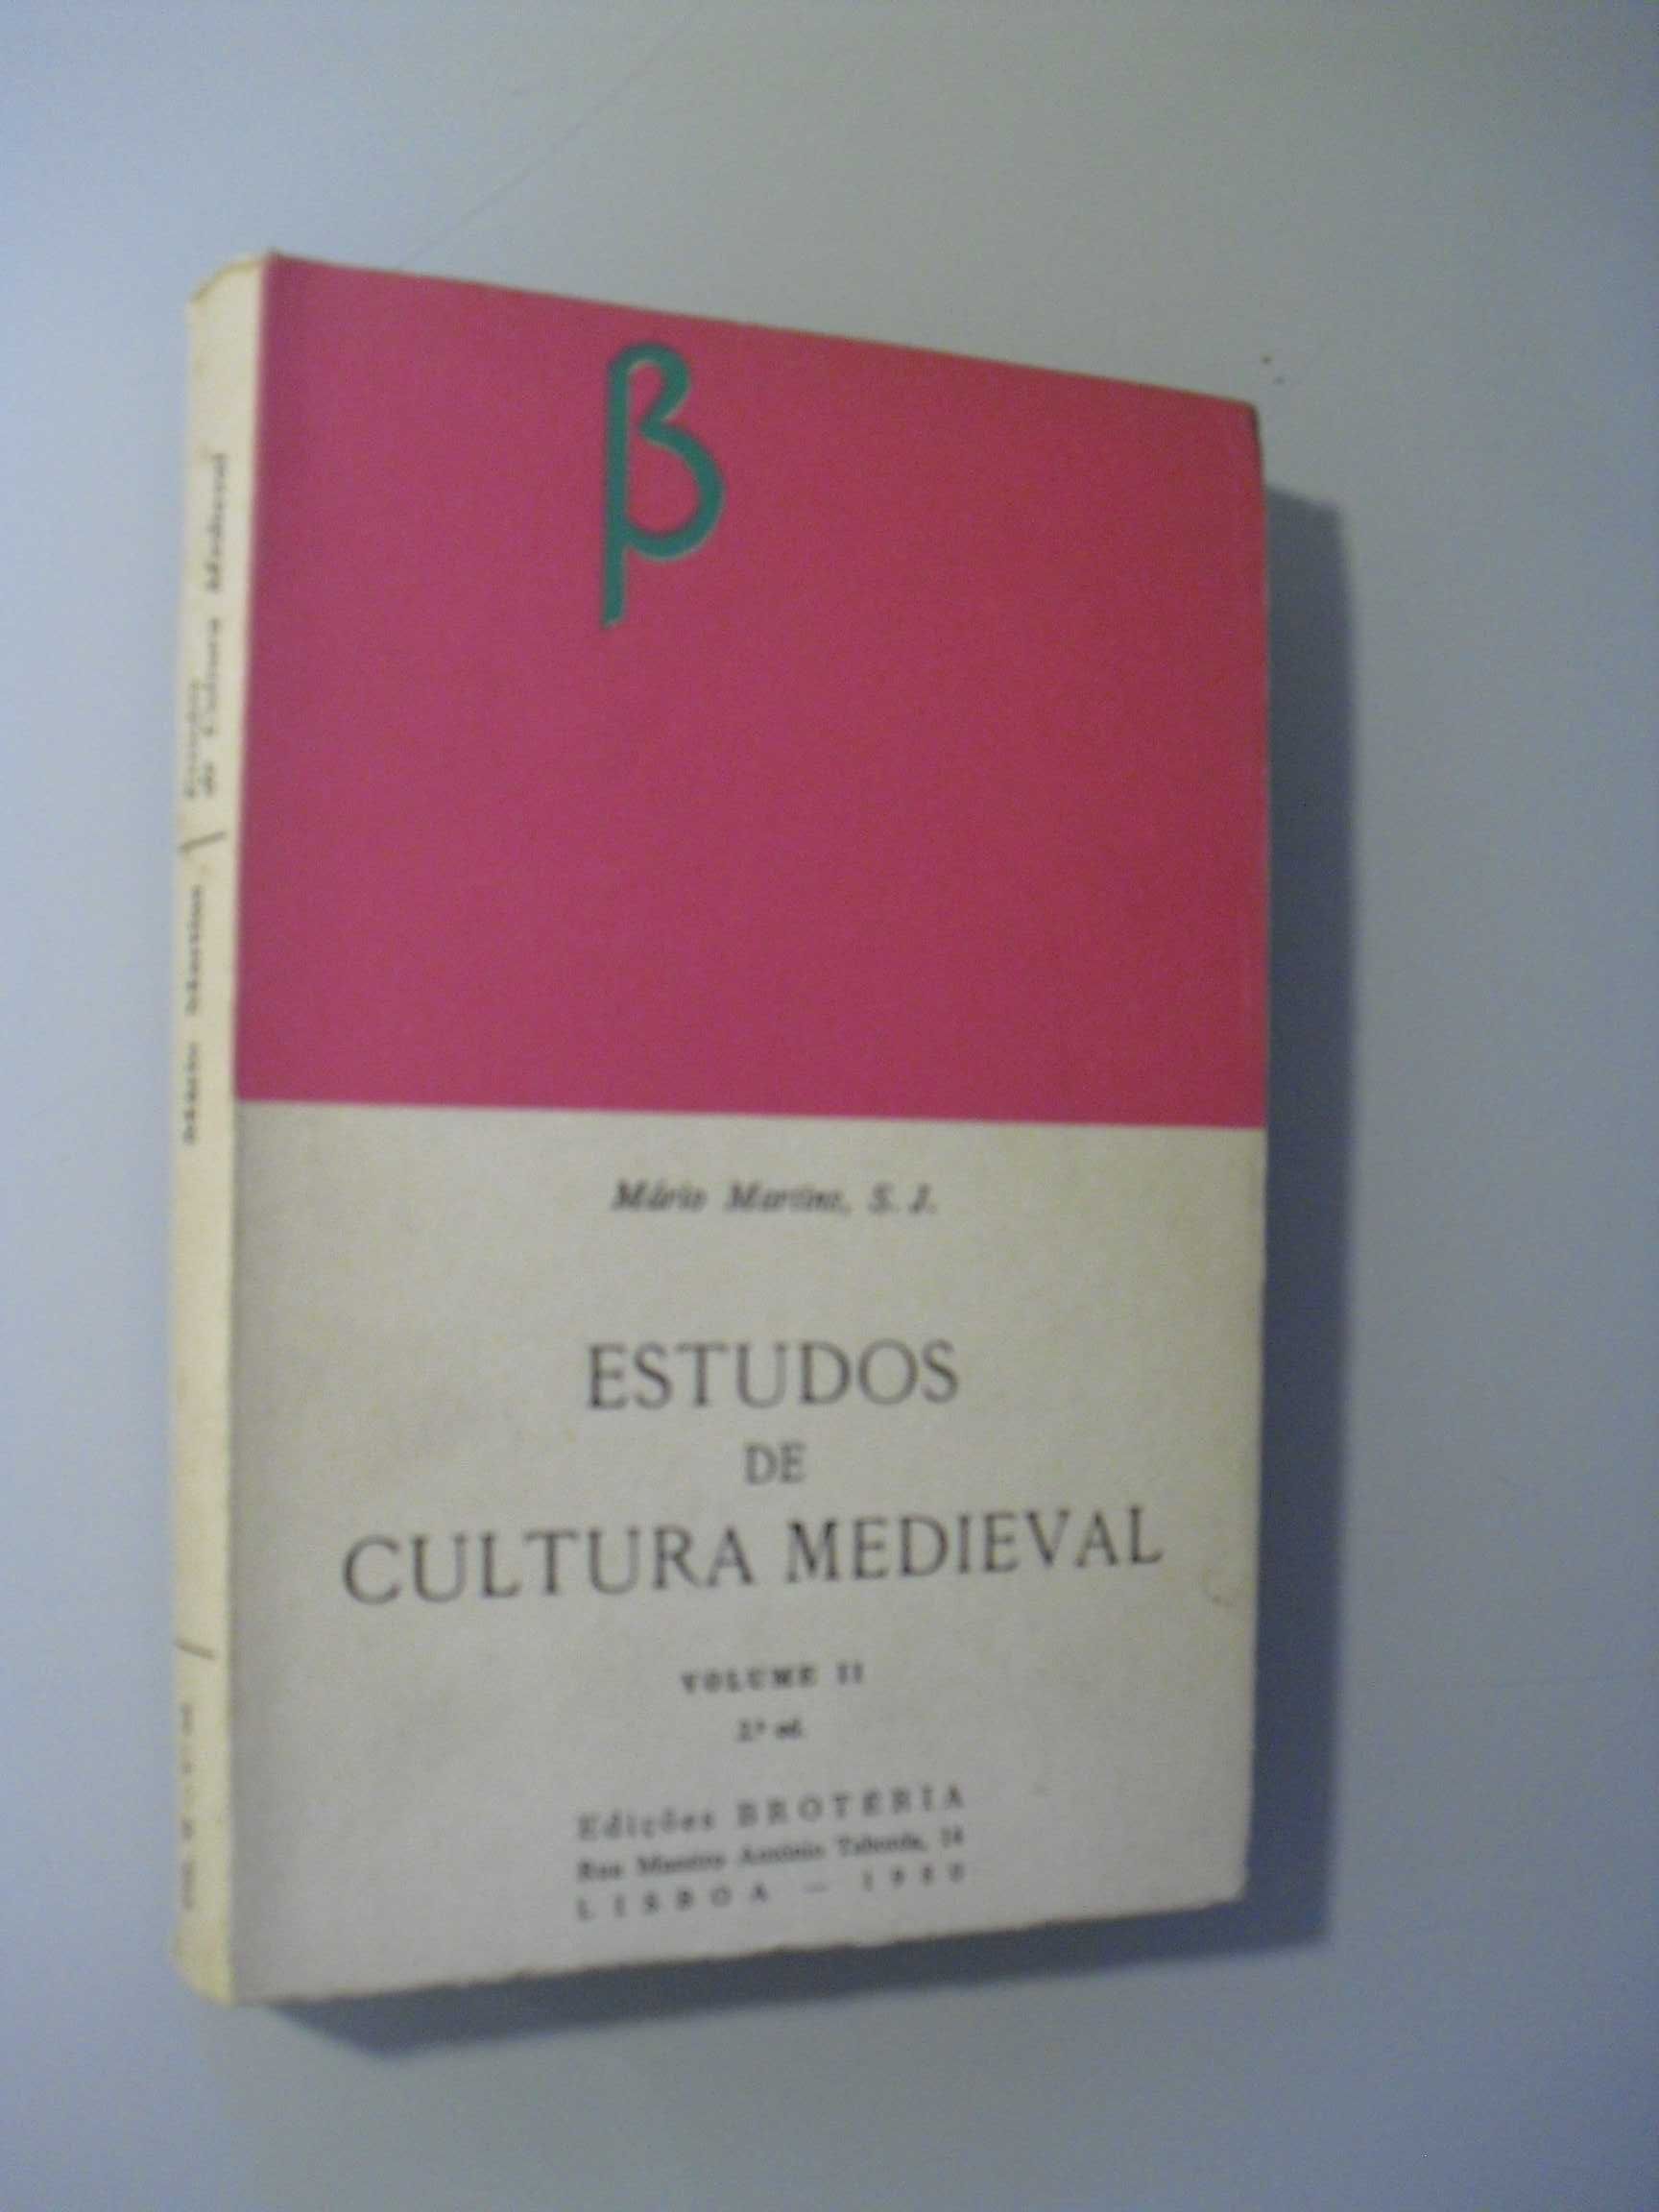 Martins (Mário,S.J);Estudos de Cultura Medieval-Volume II